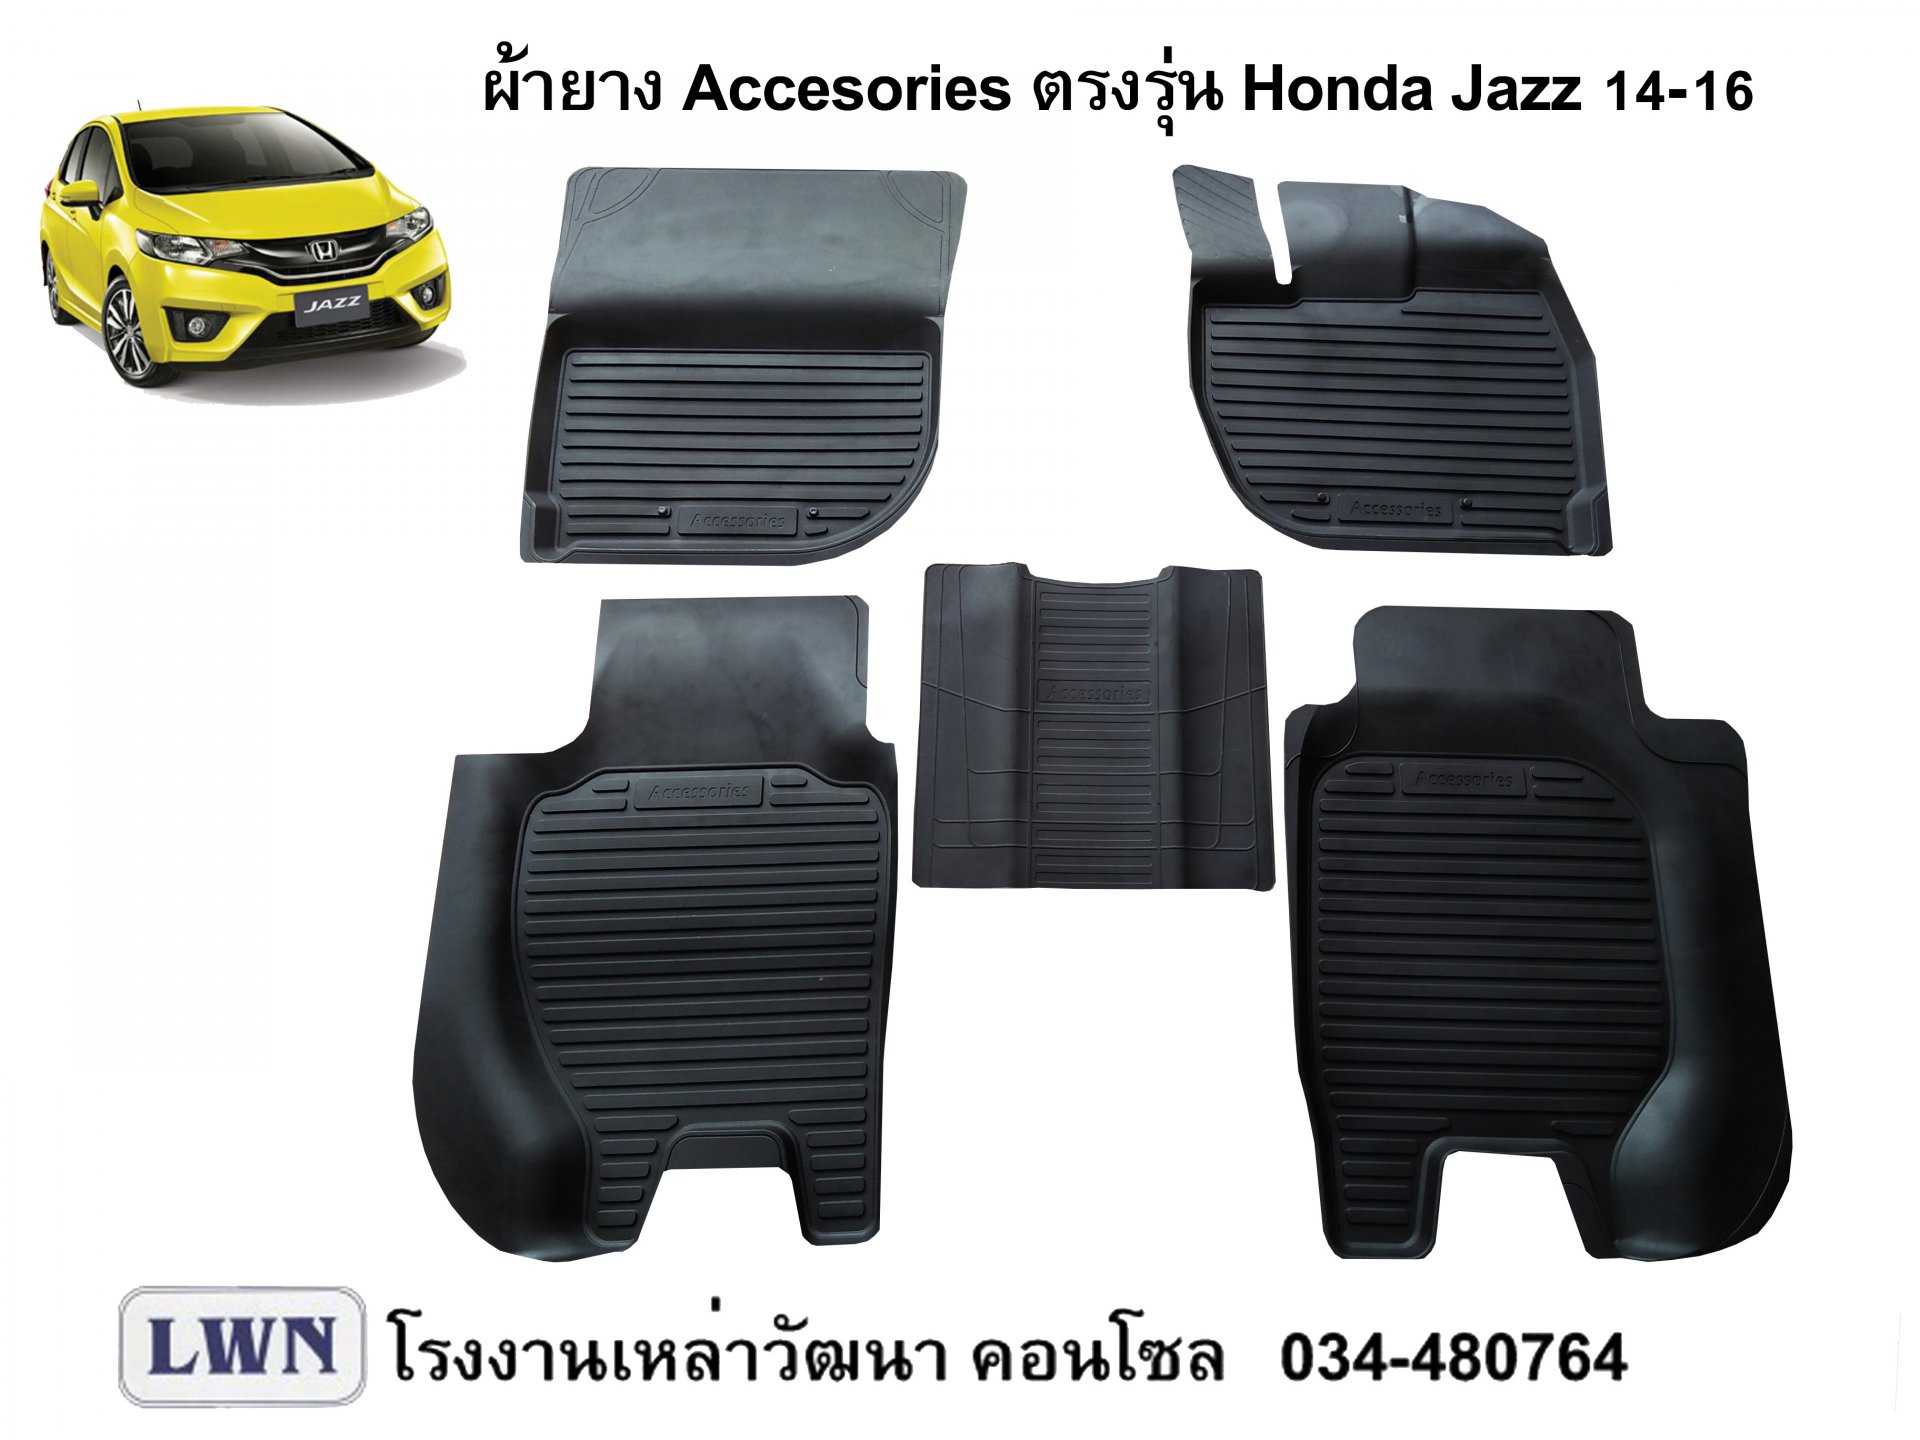 ผ้ายางปูพื้น Honda Jazz 2014-2016